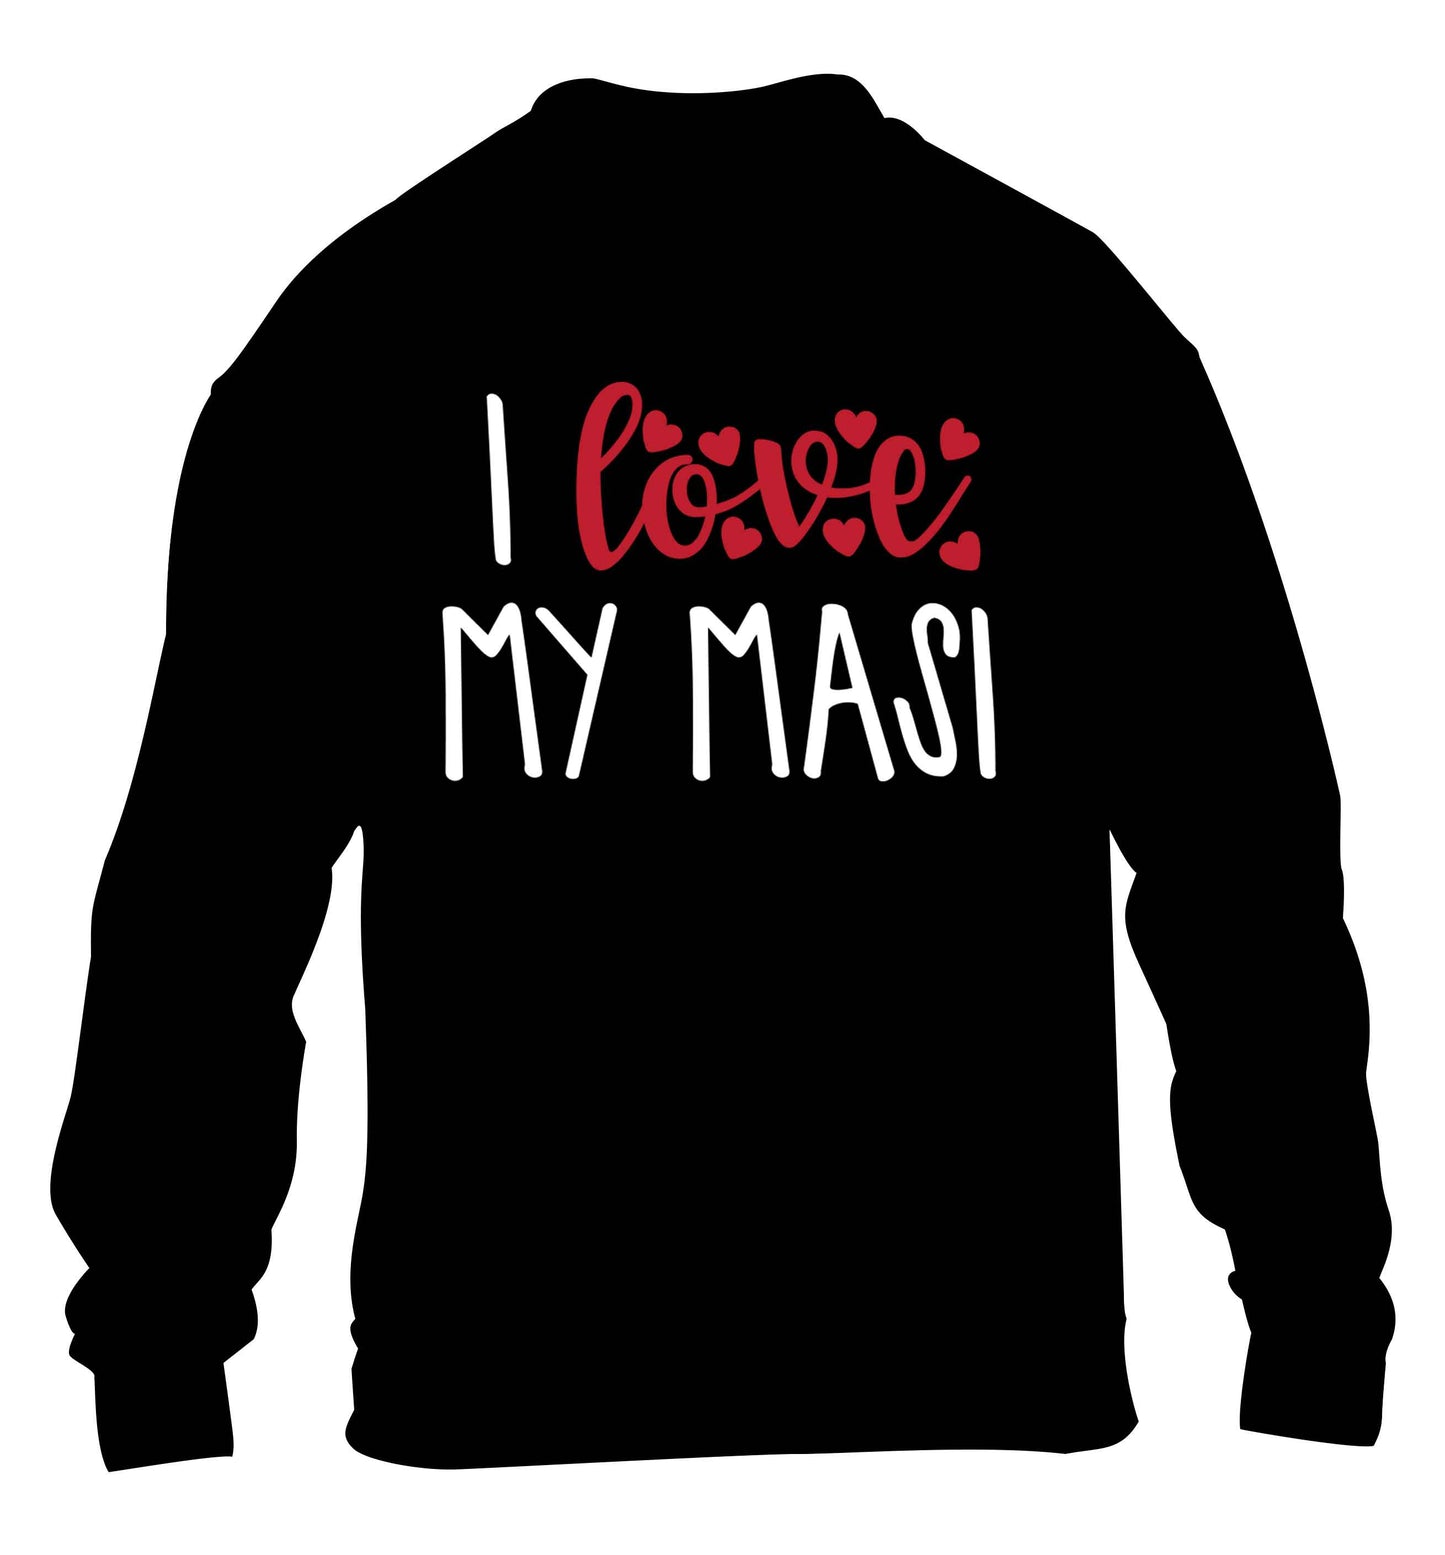 I love my masi children's black sweater 12-13 Years